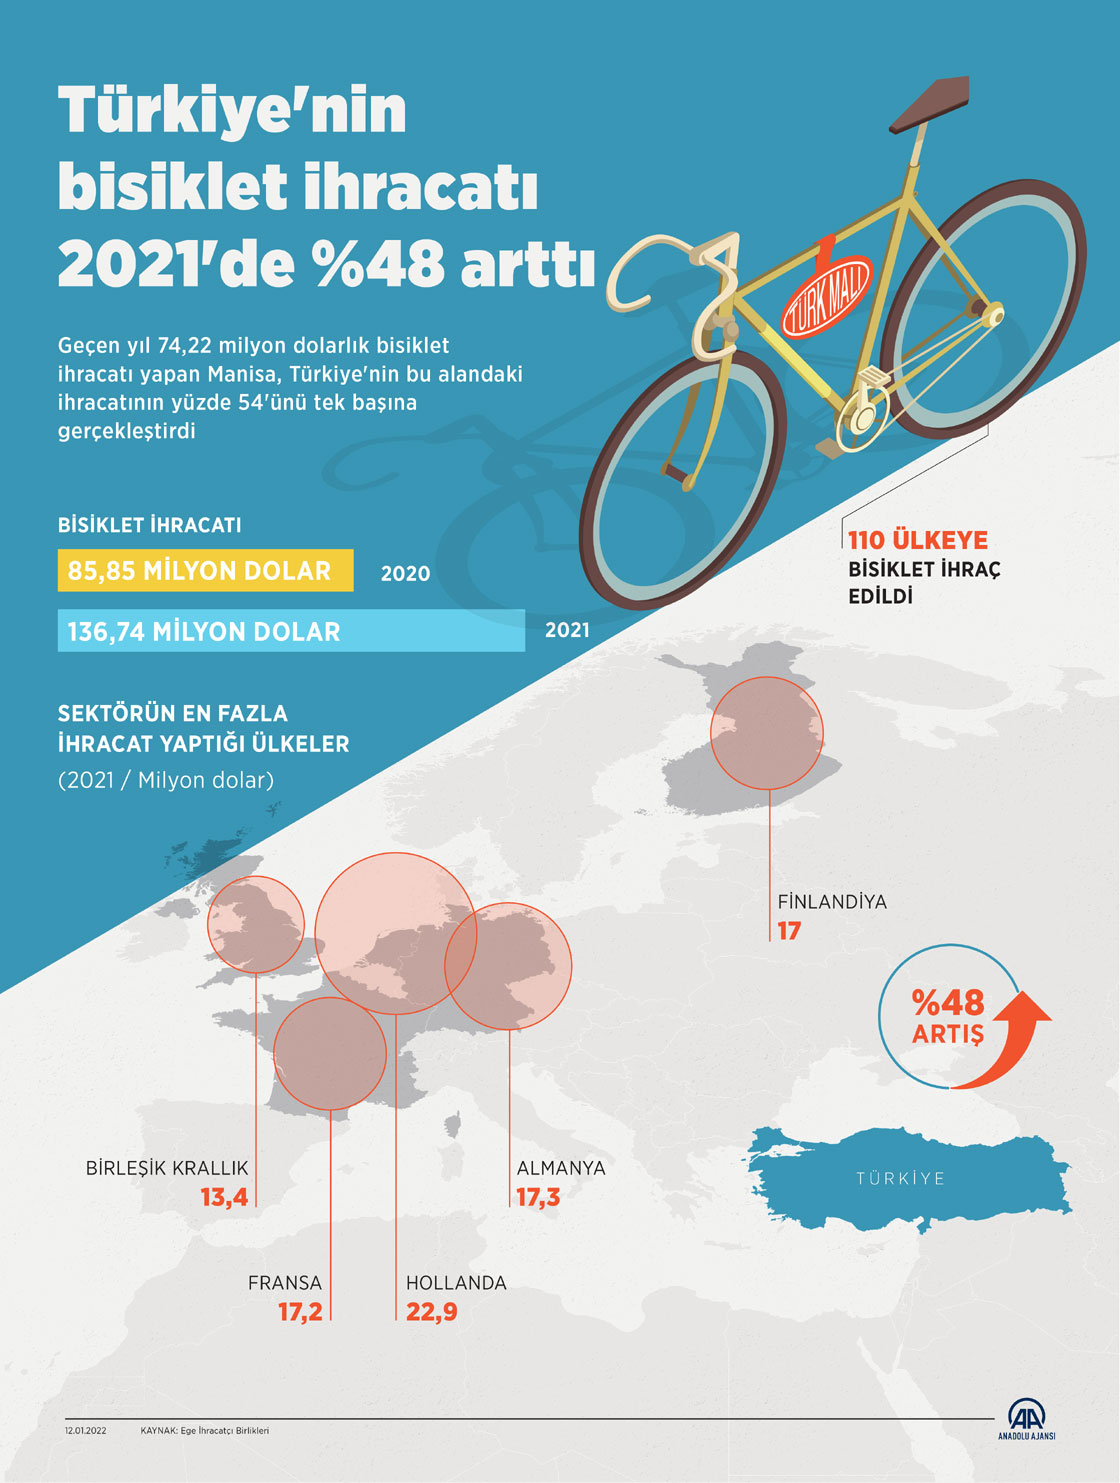 Türkiye'nin bisiklet ihracatı 2021'de yüzde 48 artarak 137 milyon dolara yaklaştı